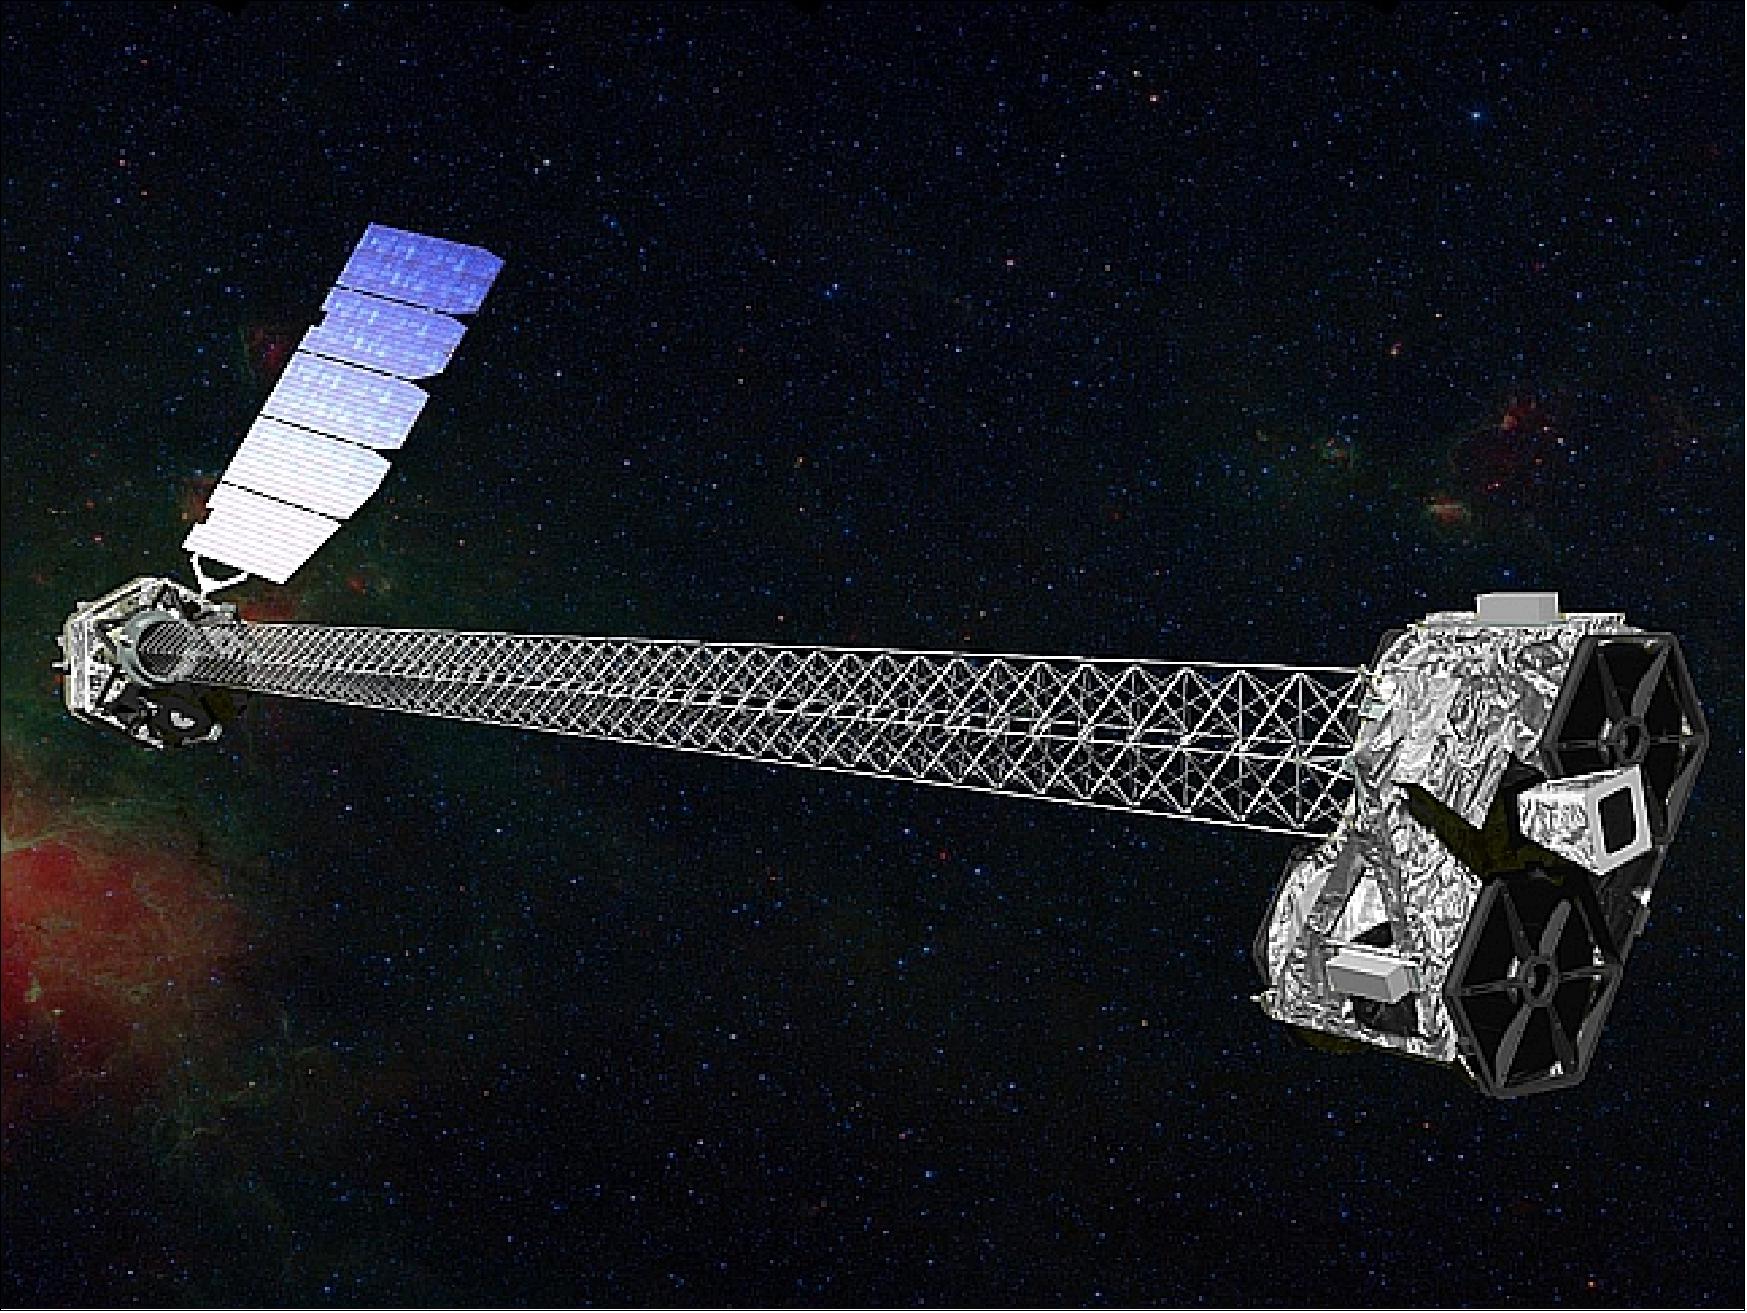 Figure 1: Artist's rendition of the NuSTAR spacecraft in orbit (image credit: NASA/JPL)